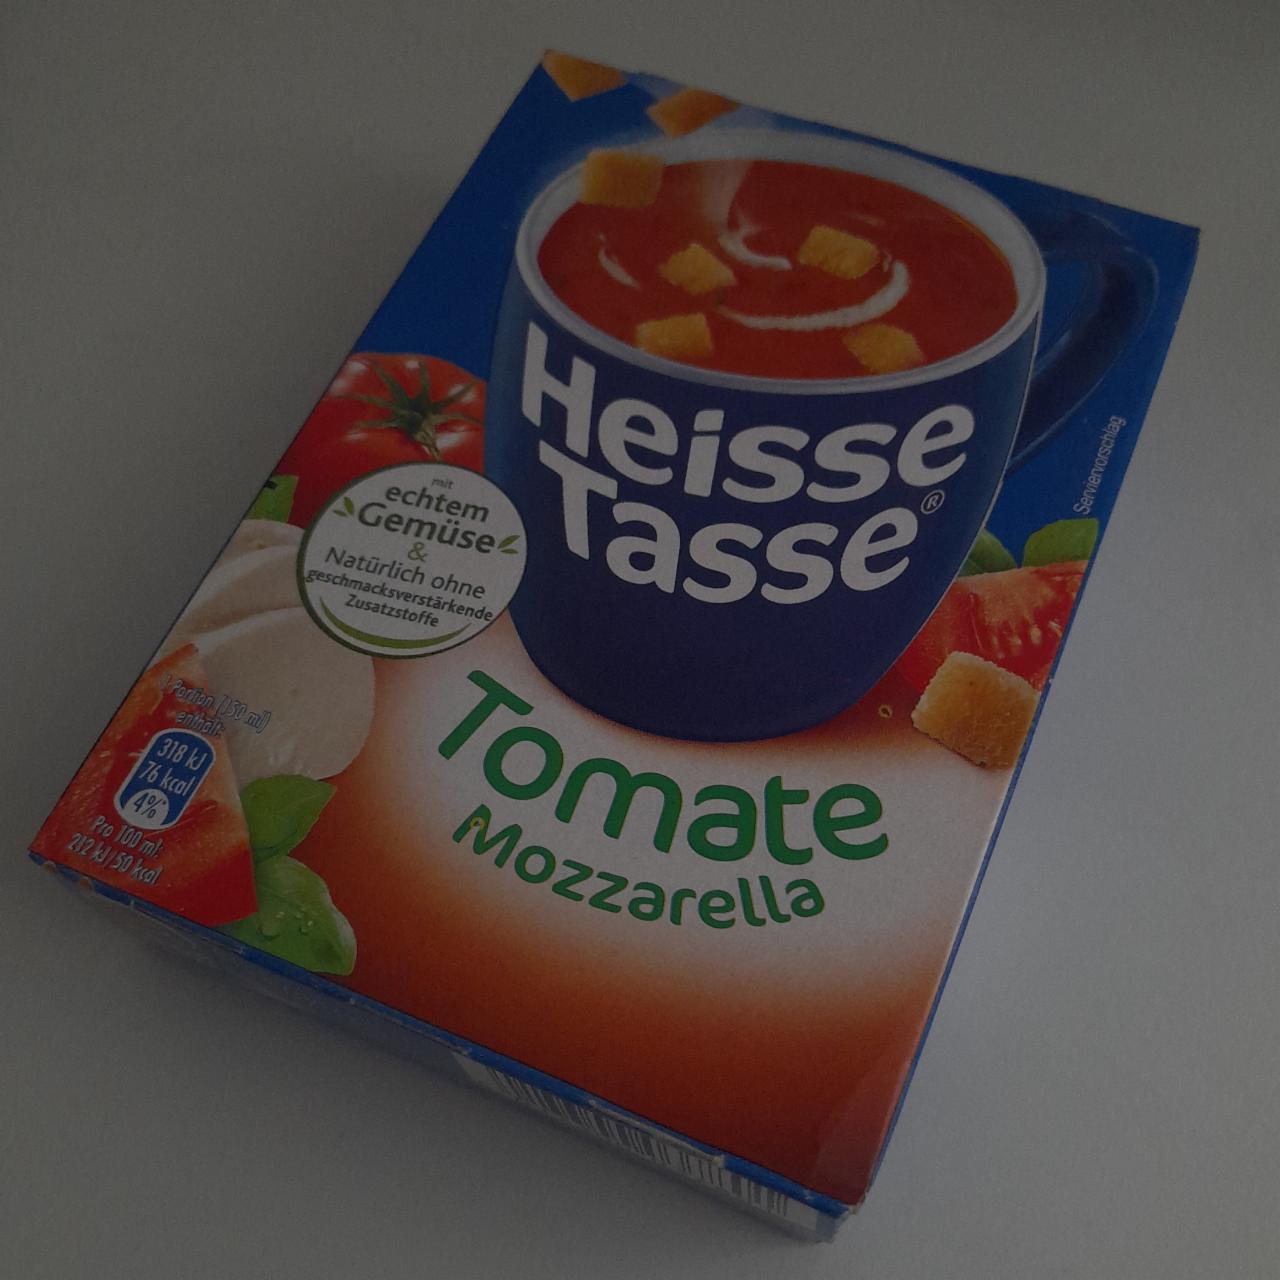 Фото - Суп томатный быстрого приготовления Tomate Mozzarella Heisse Tasse Erasco